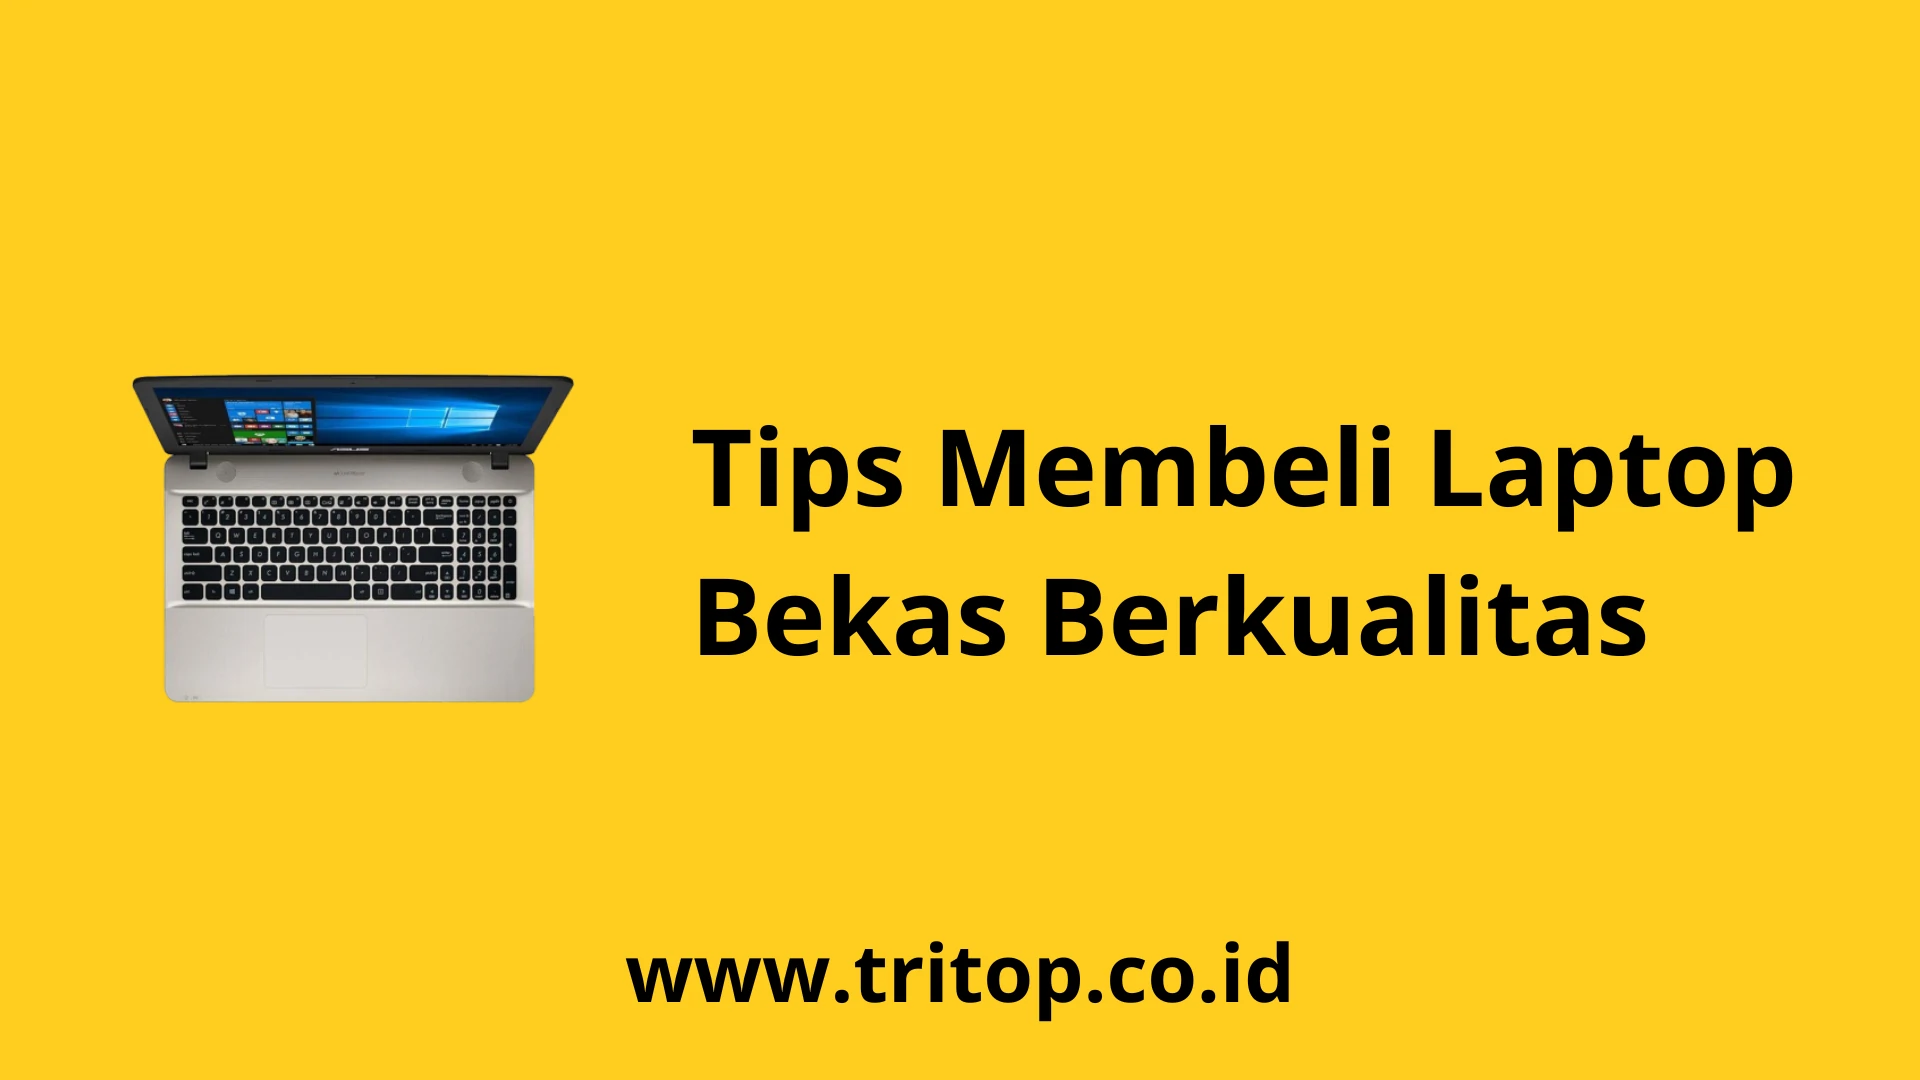 Tips Membeli Laptop Bekas Berkualitas www.tritop.co.id